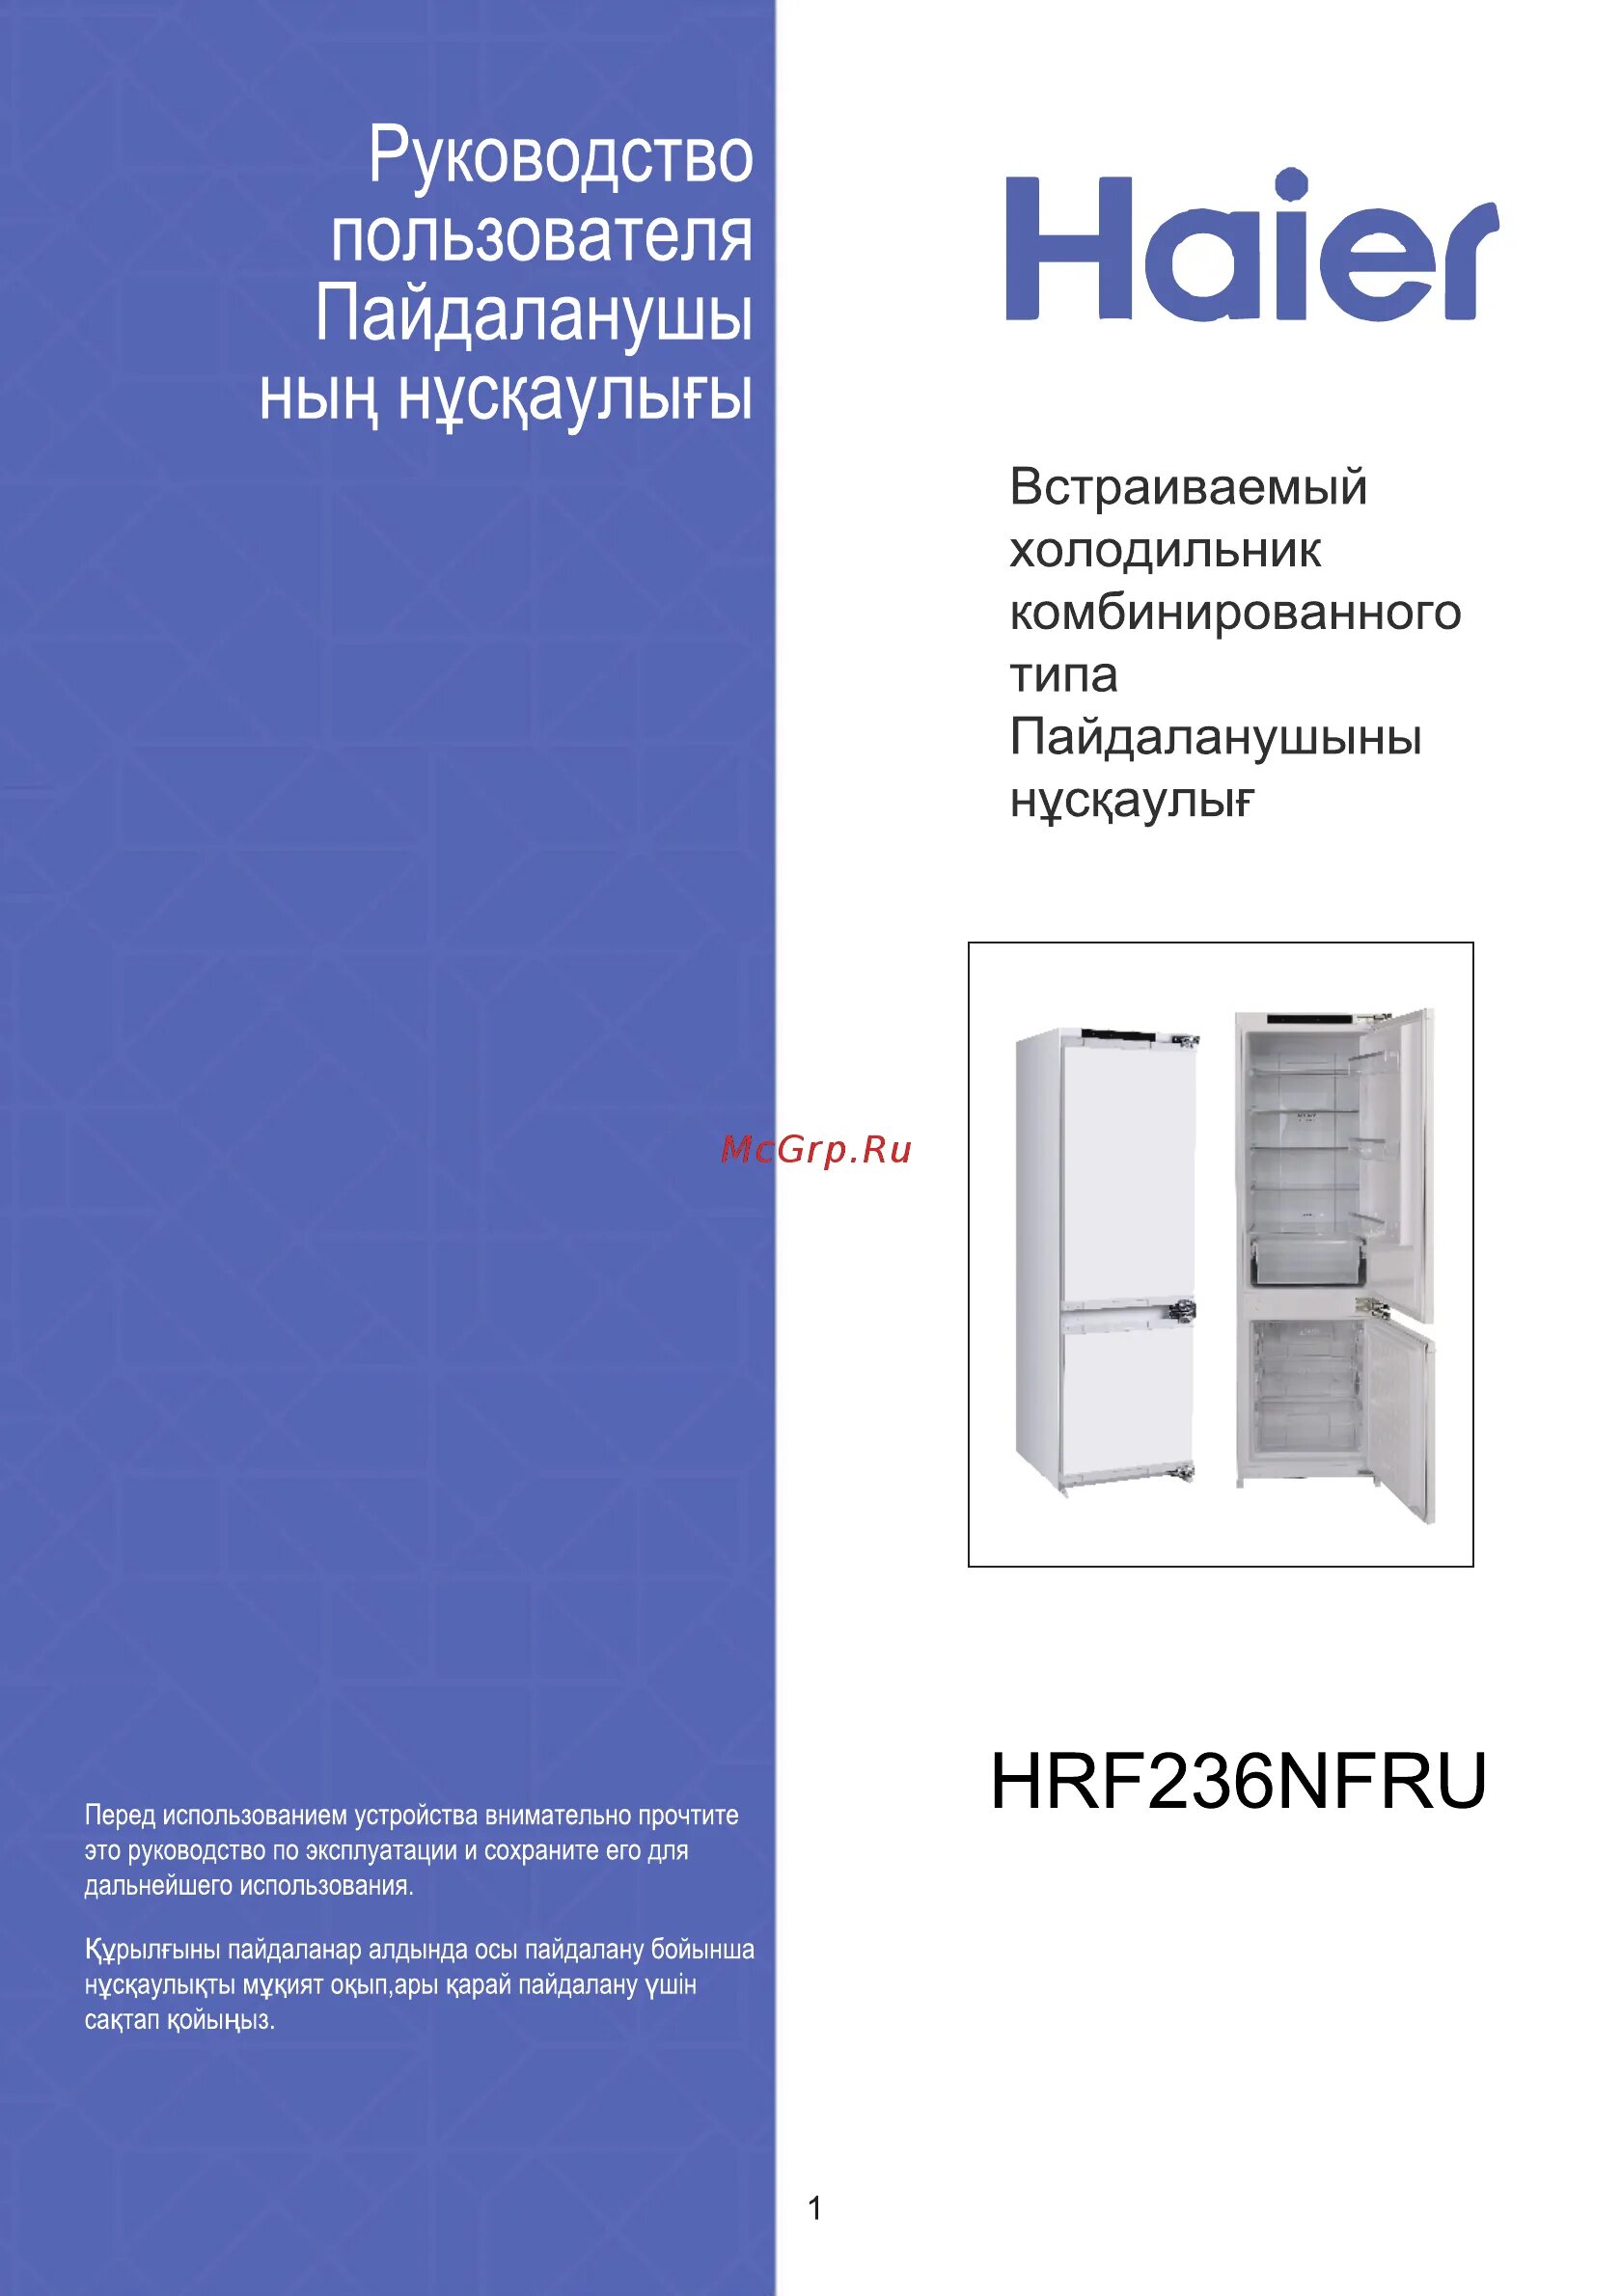 Холодильник встроенный Haier hrf236nfru. Встраиваемый холодильник Комби Haier hrf236nfru. Встраиваемый холодильник Комби Haier hrf236nfru схема встраивания. Холодильник haier размеры